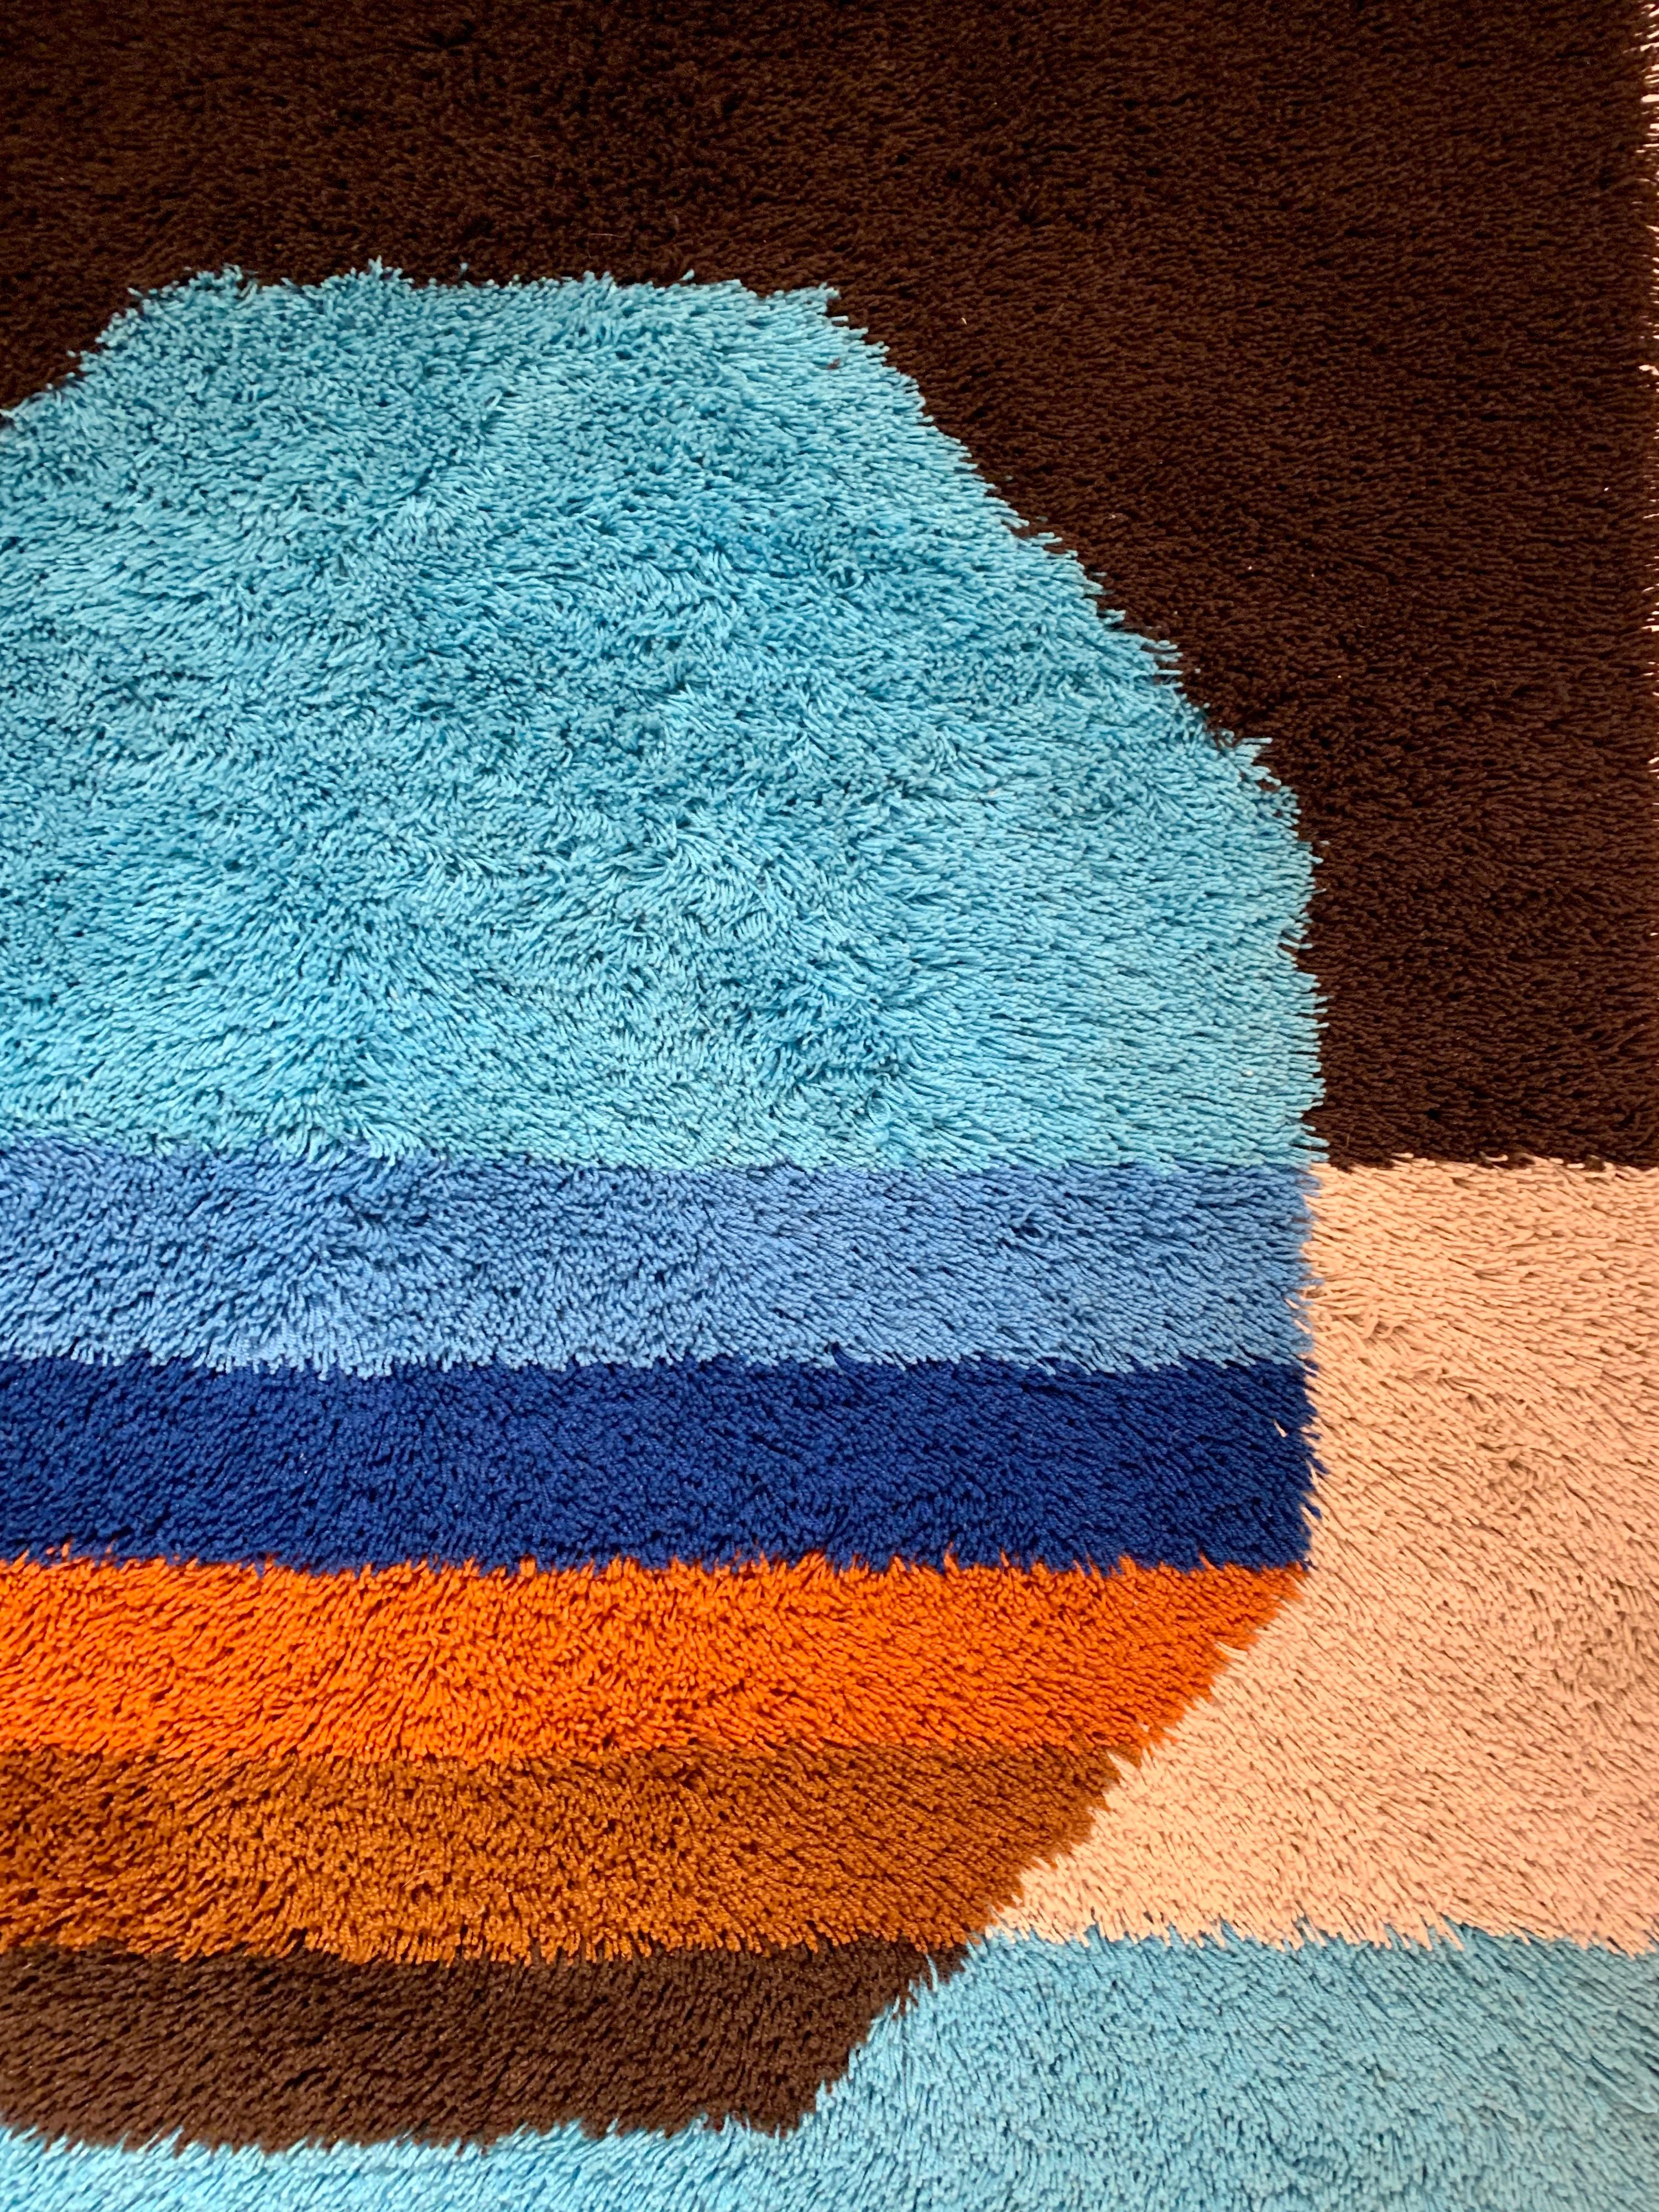 Desso est une entreprise néerlandaise qui a créé des tapis décoratifs dans les années 1970. Ce modèle particulier est contemporain du style pop de Verner Panton avec ses couleurs vives et saturées.